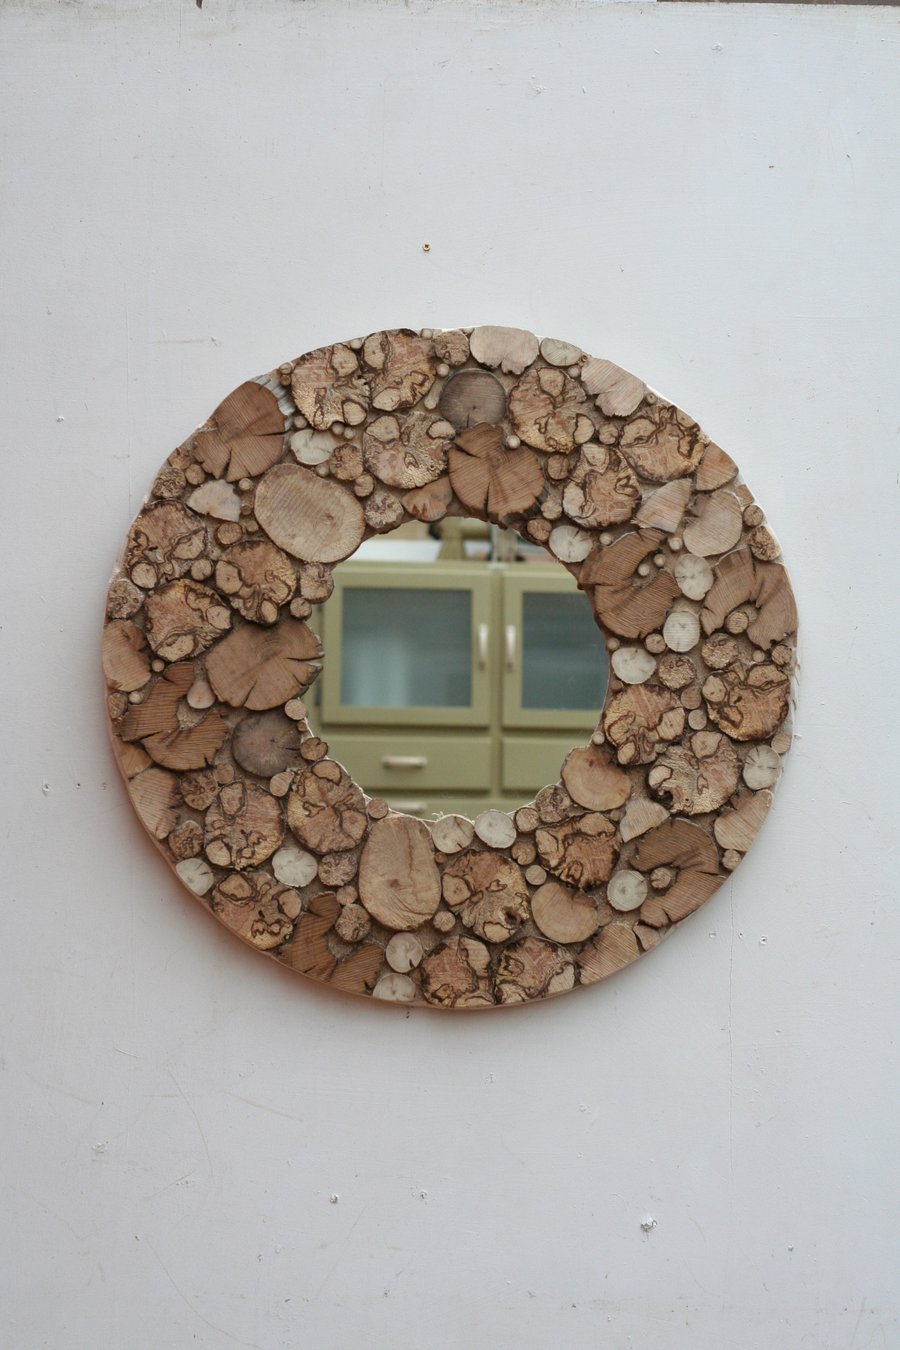 Driftwood Mirror, Drift Wood Mirror, Round Wooden Mirror,Natural Wood Mirror